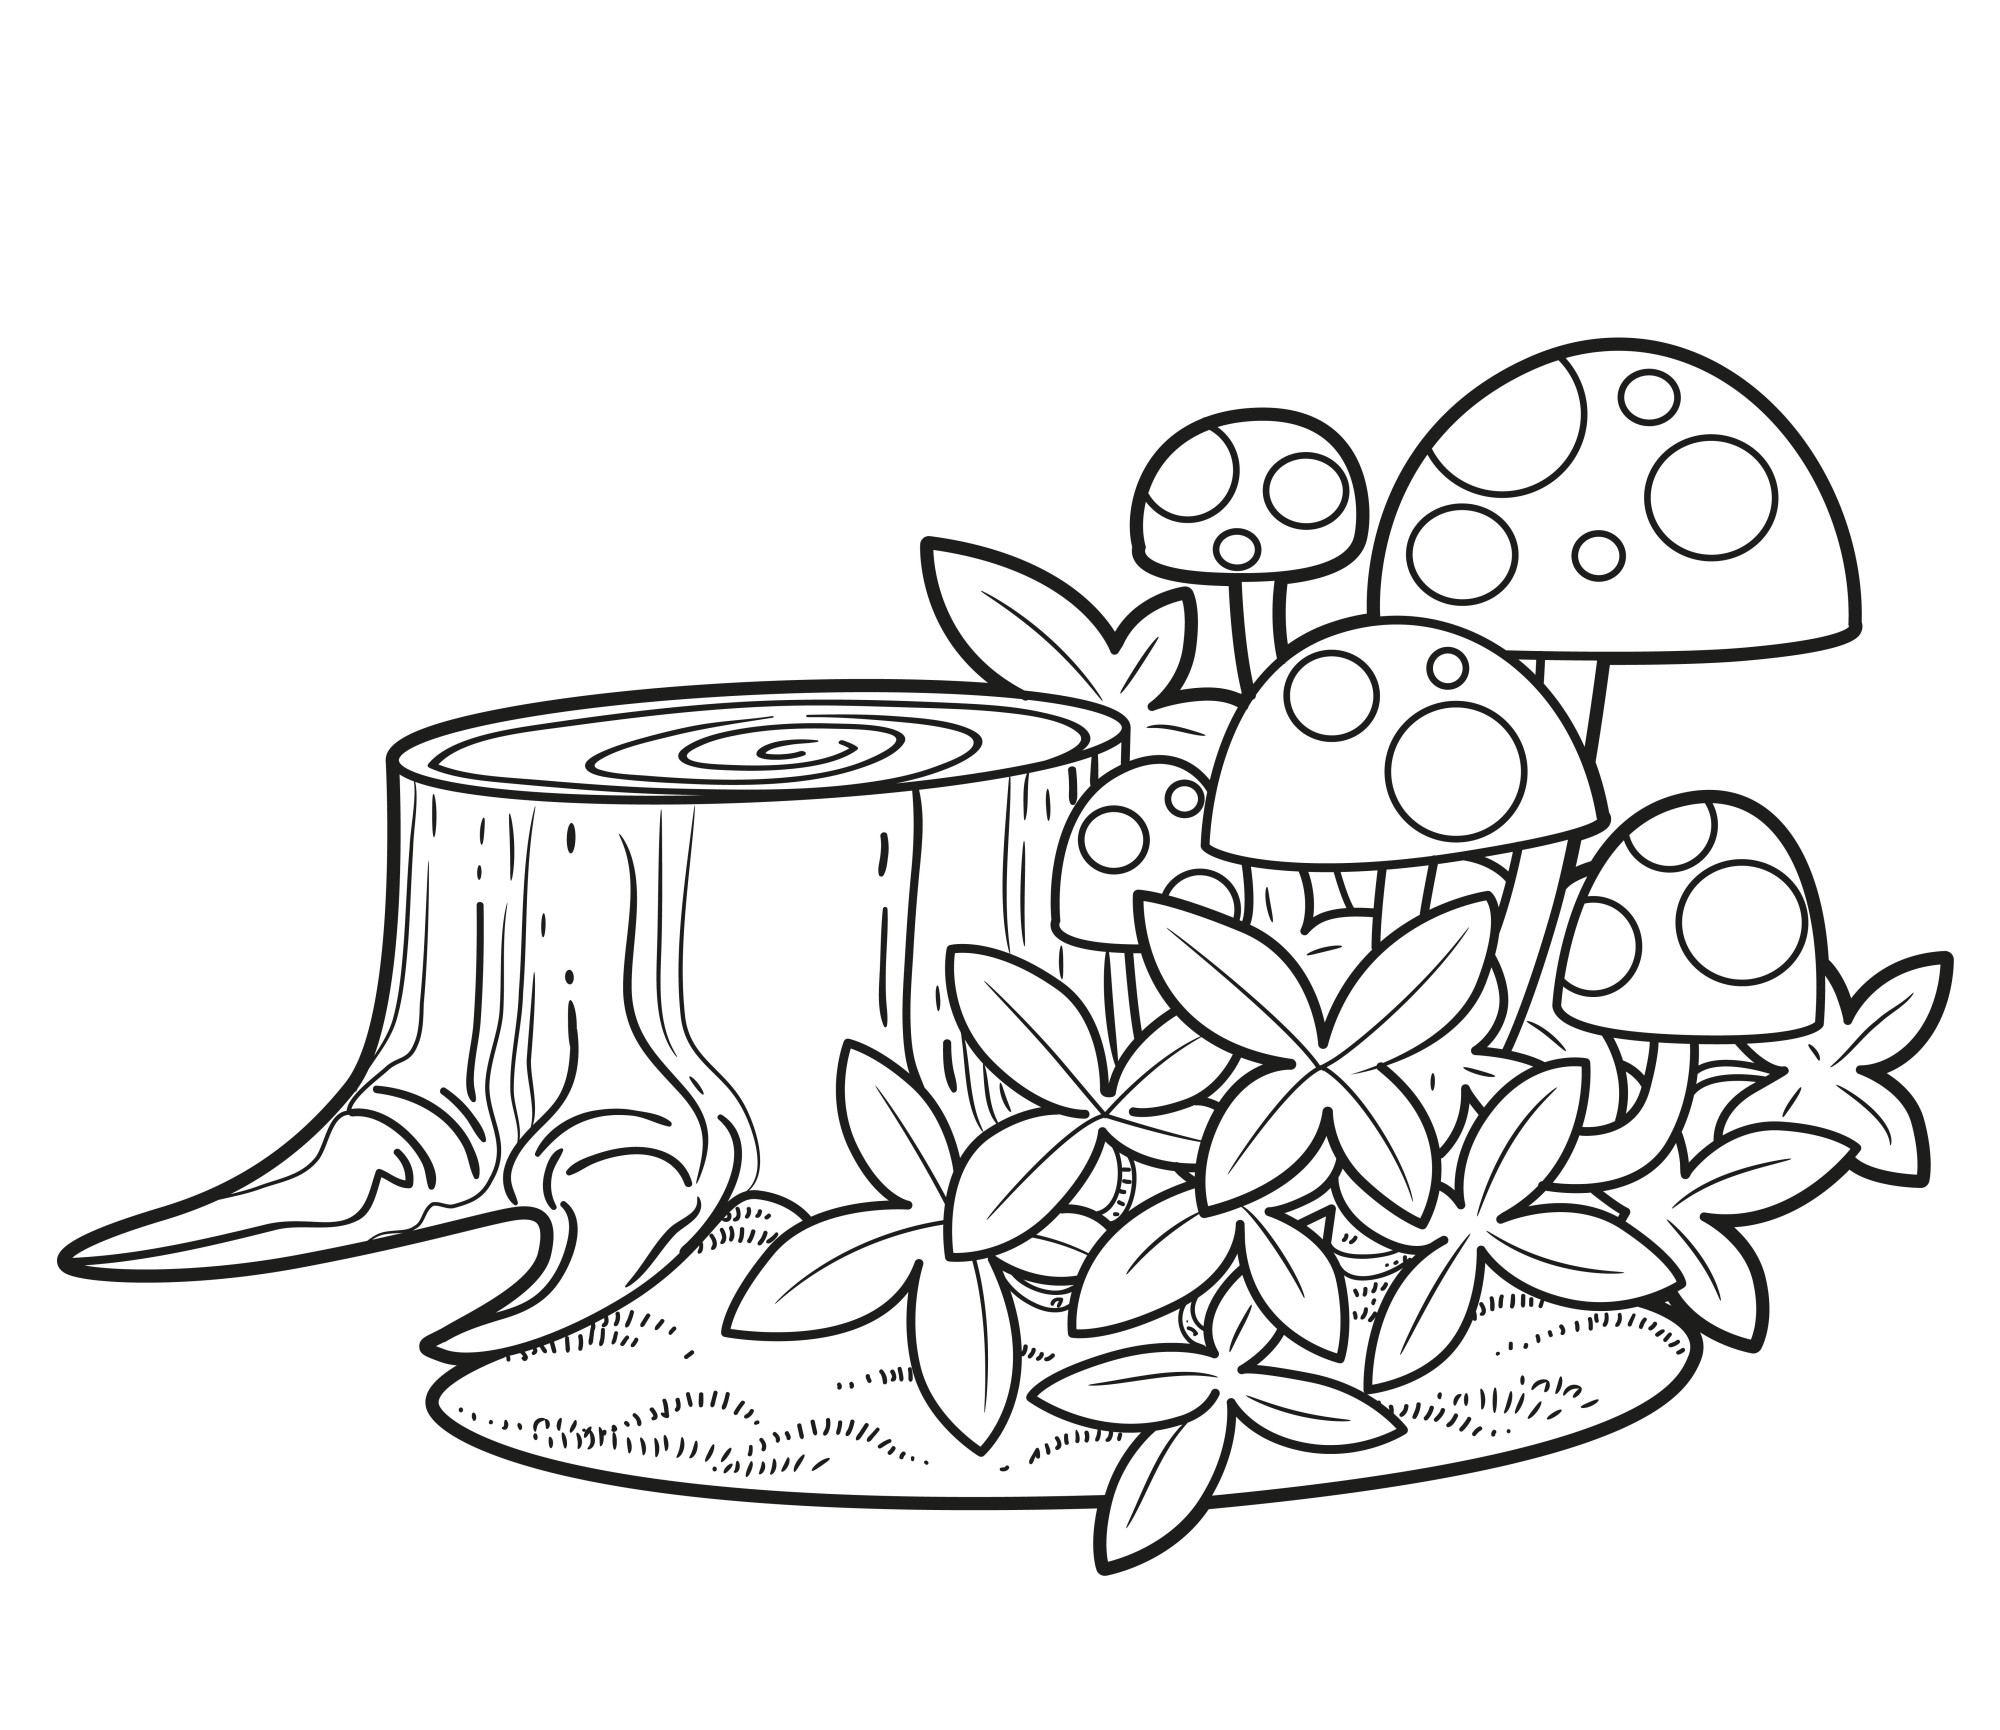 Раскраска для детей: грибы возле пенька в зарослях травы